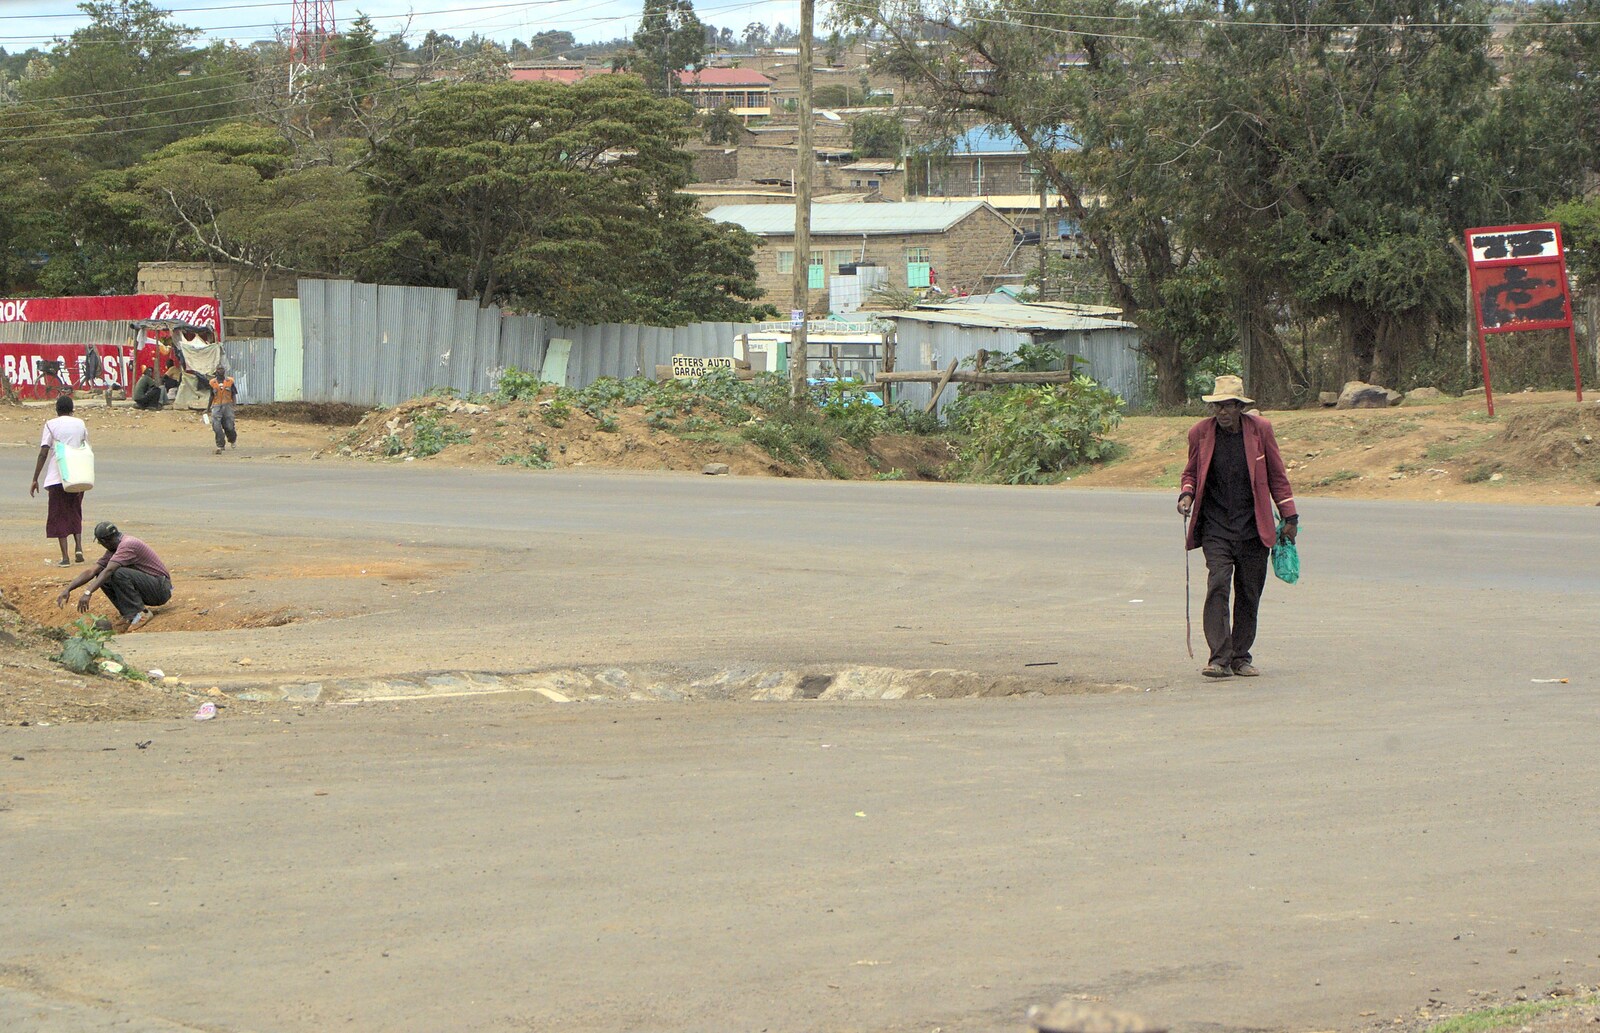 An old dude walks around from Nairobi and the Road to Maasai Mara, Kenya, Africa - 1st November 2010